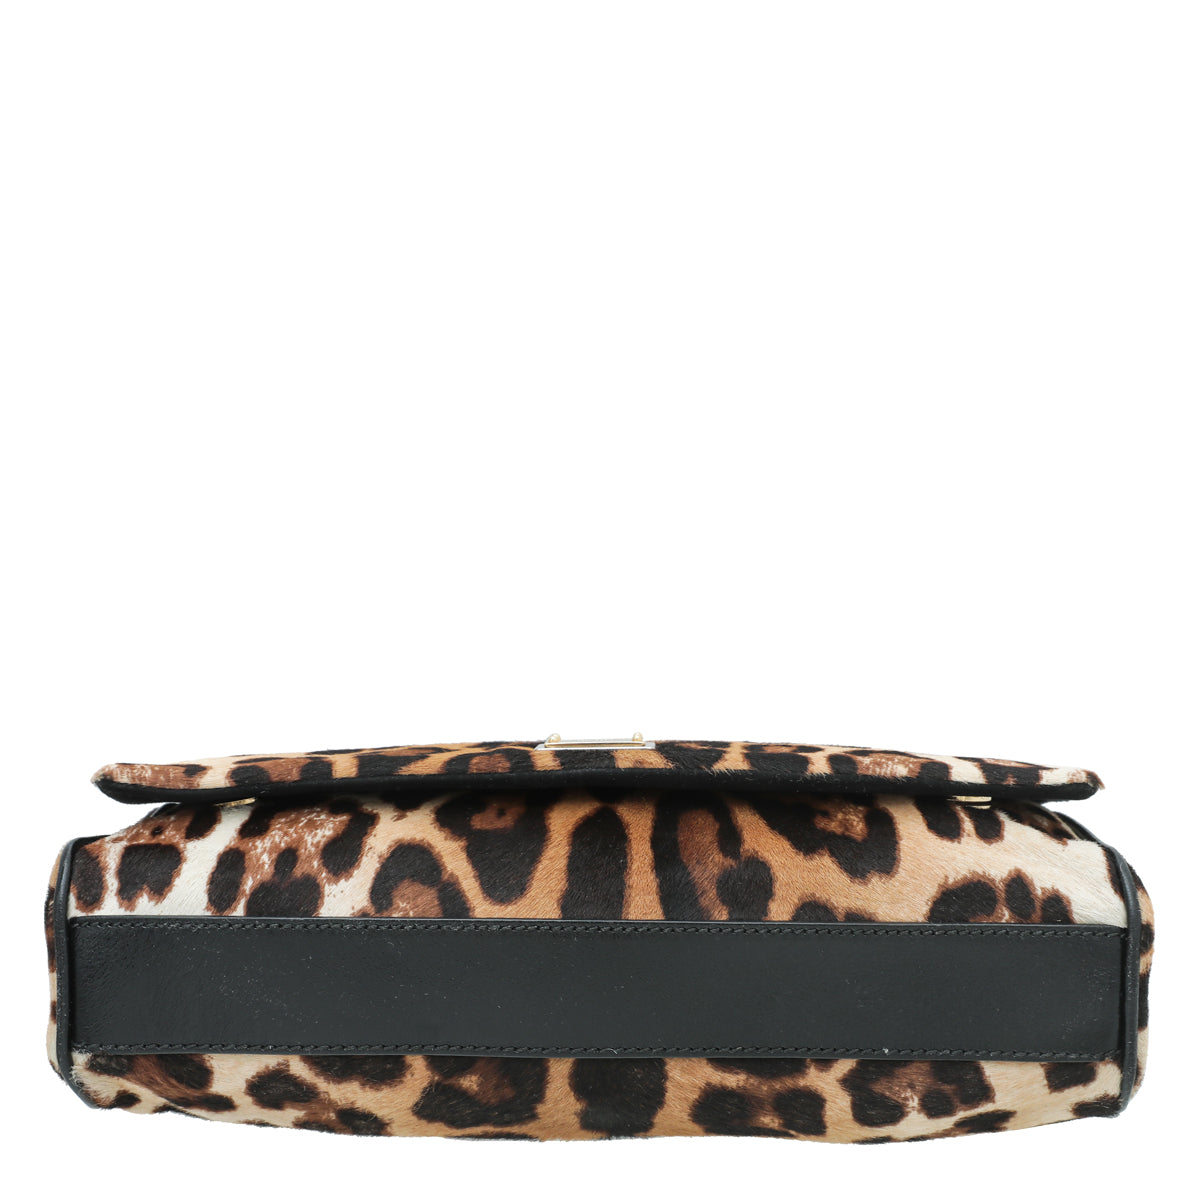 Dolce & Gabbana Brown Leopard Calf Hair Miss Charles Bag